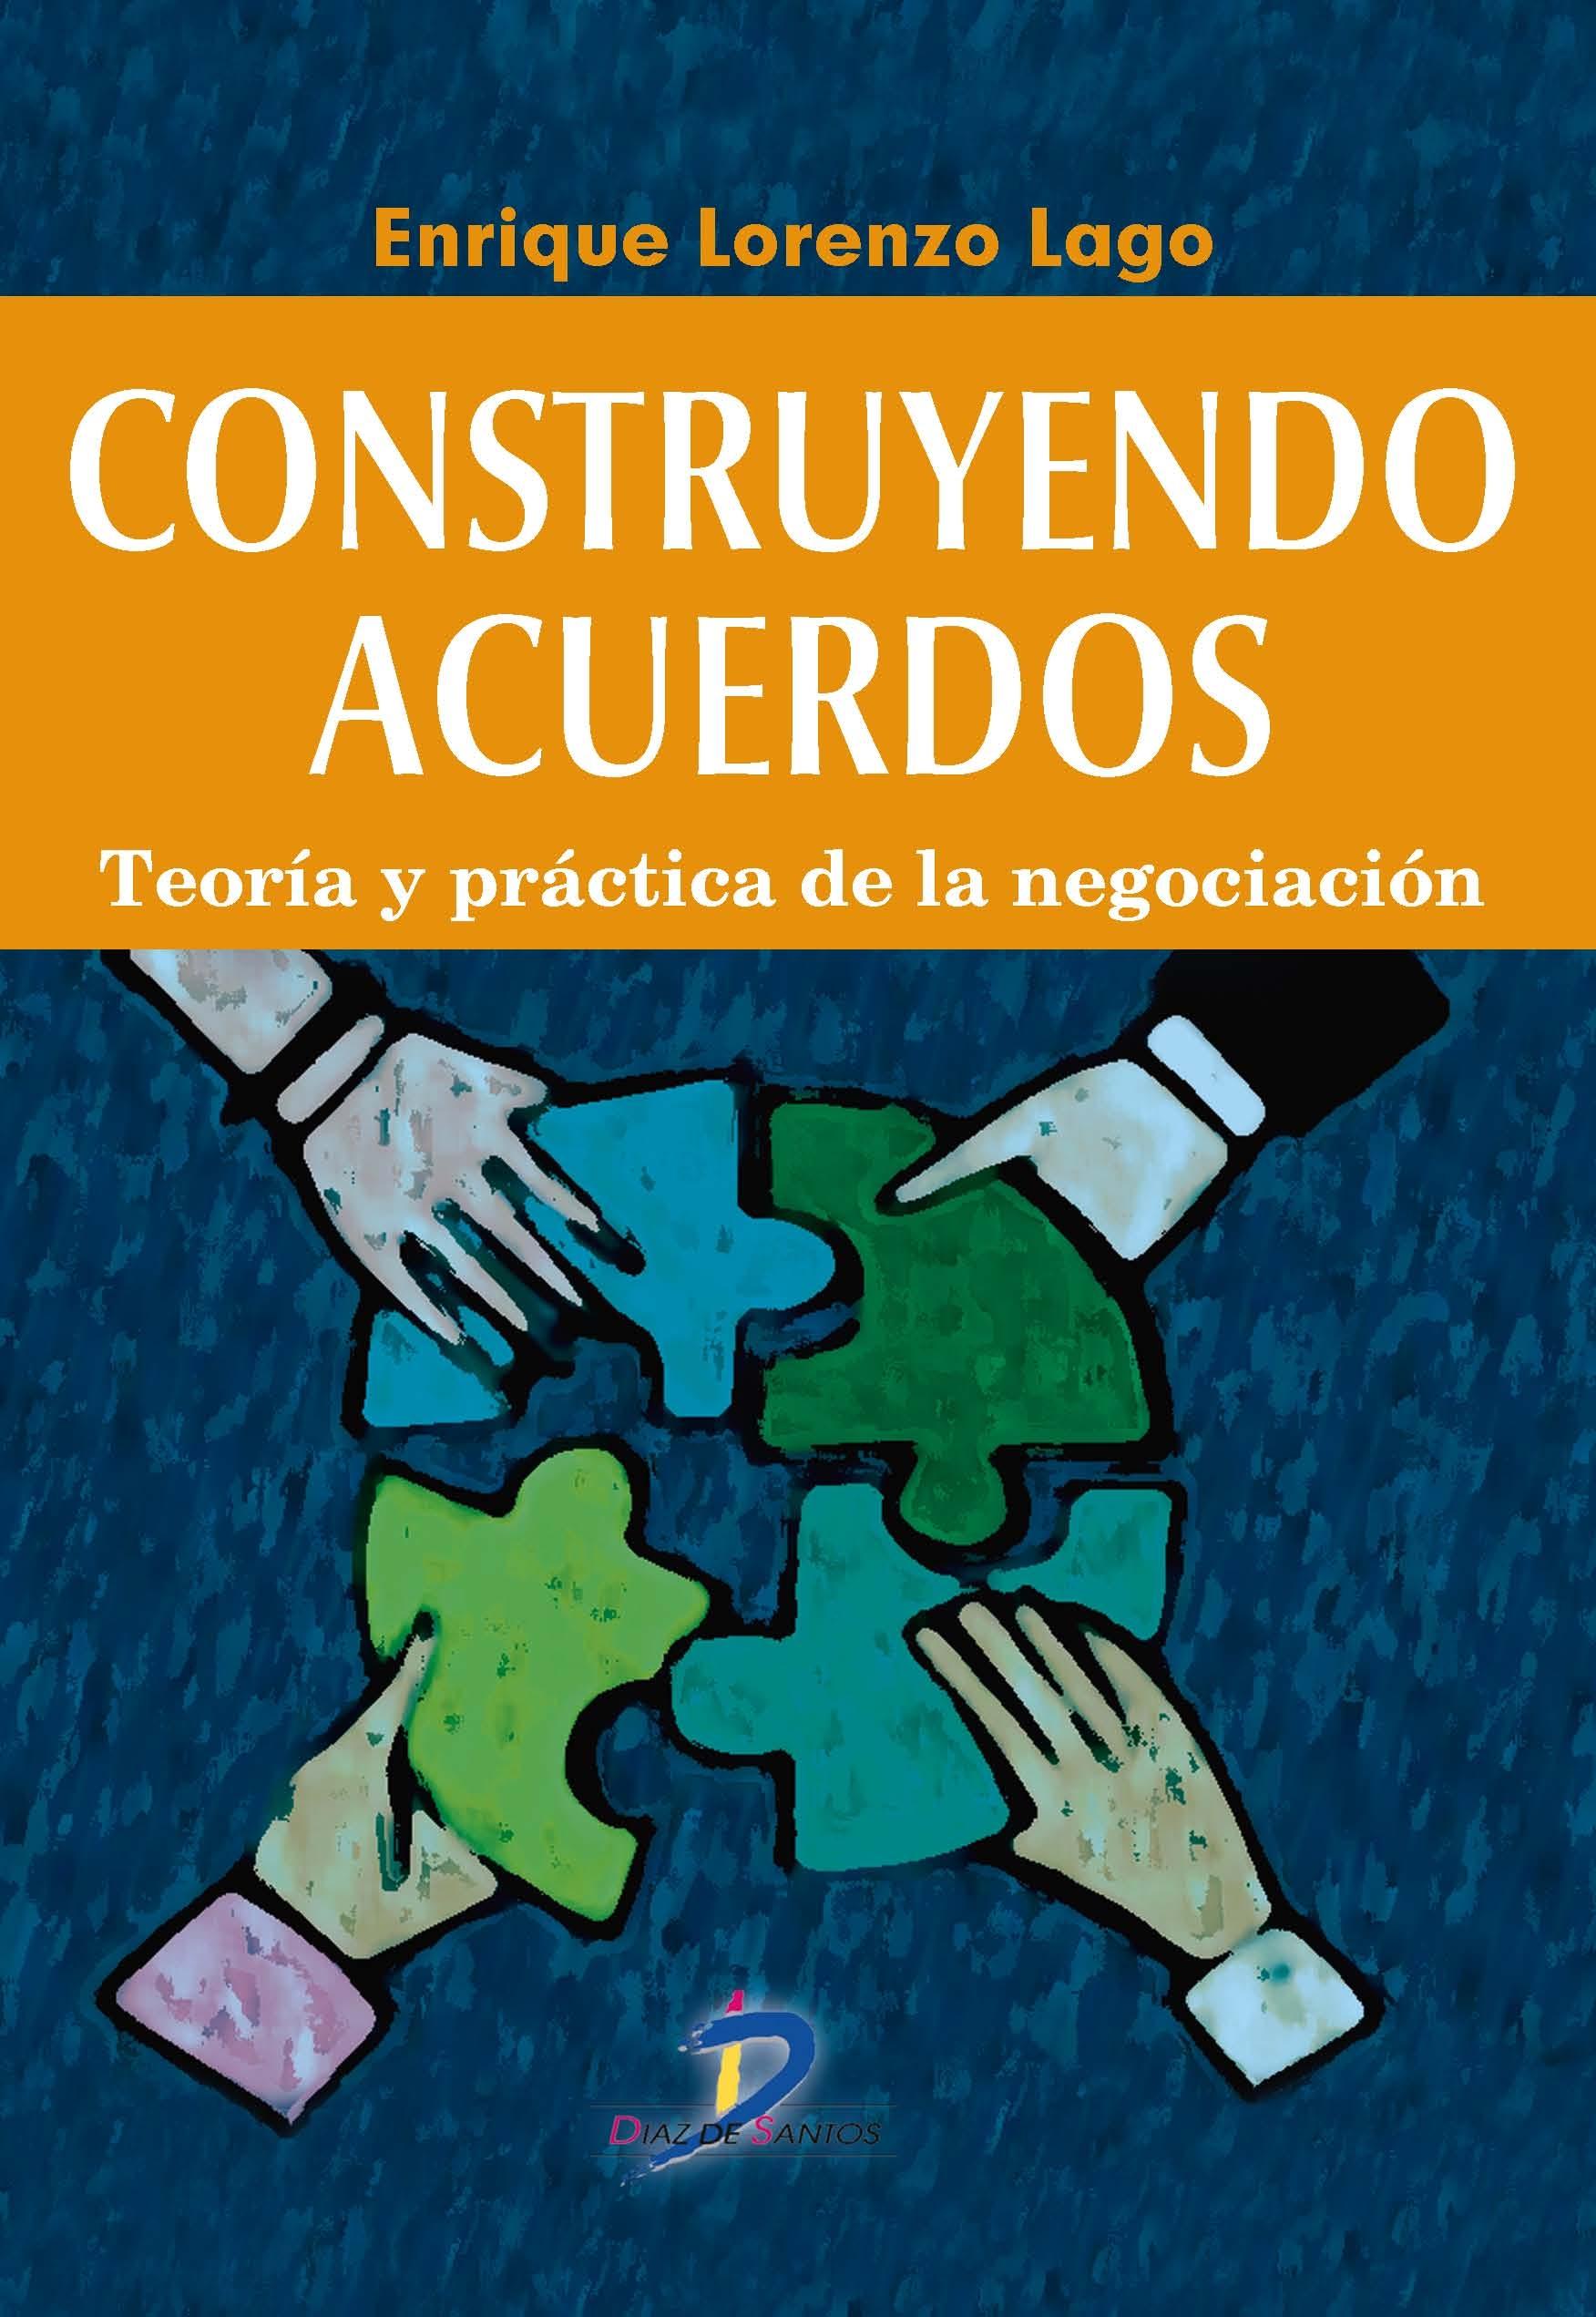 CONSTRUYENDO ACUERDOS "Teoría y práctica de la negociación"